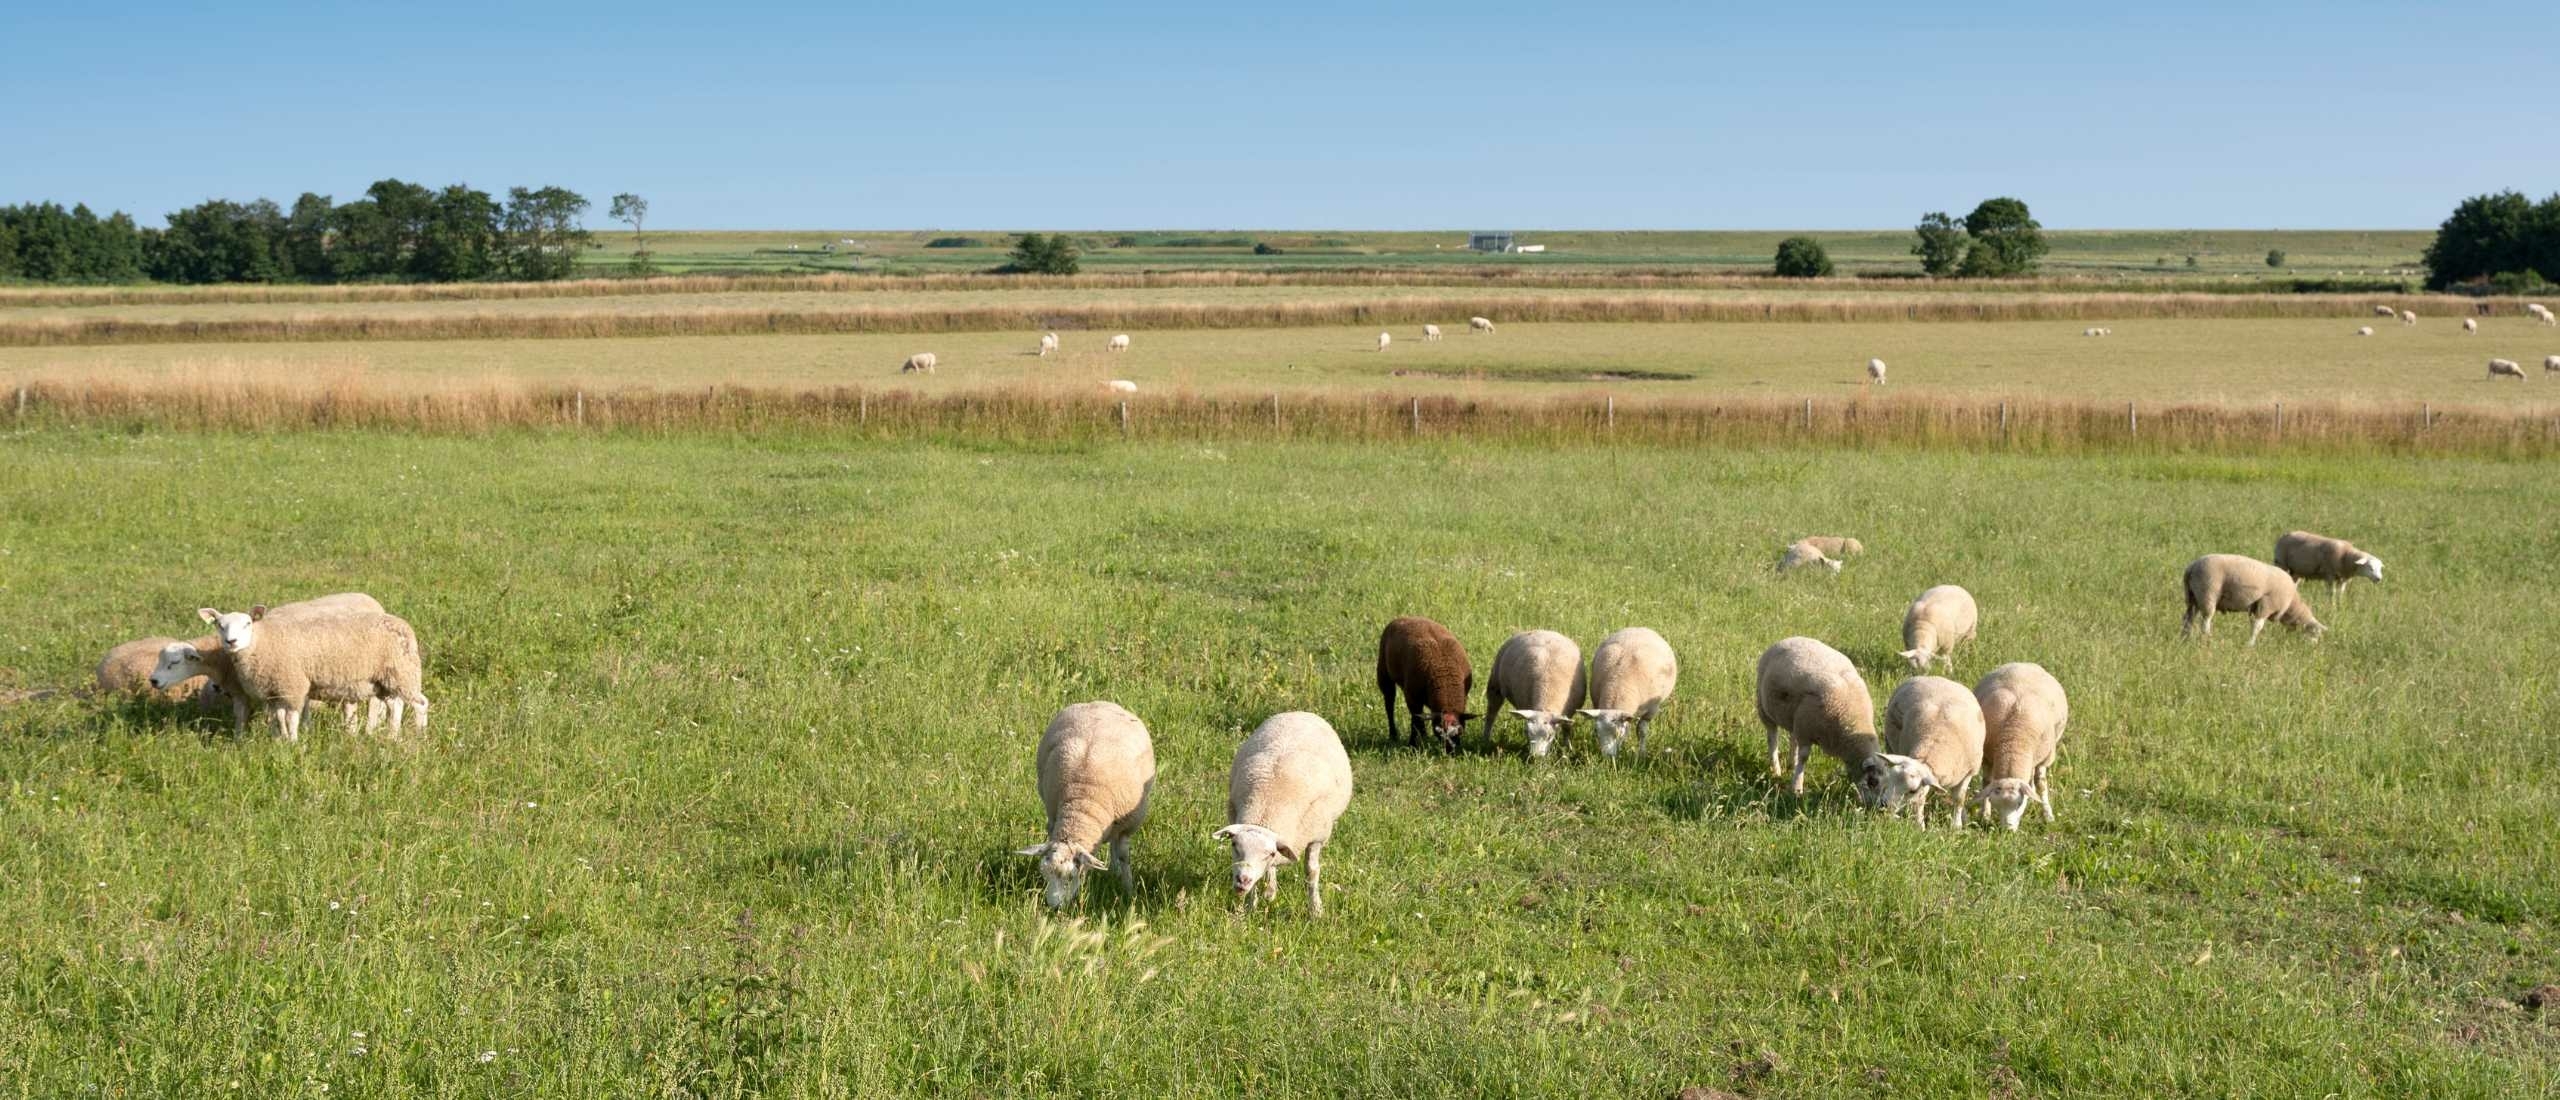 schapenboerderij texel bezoeken